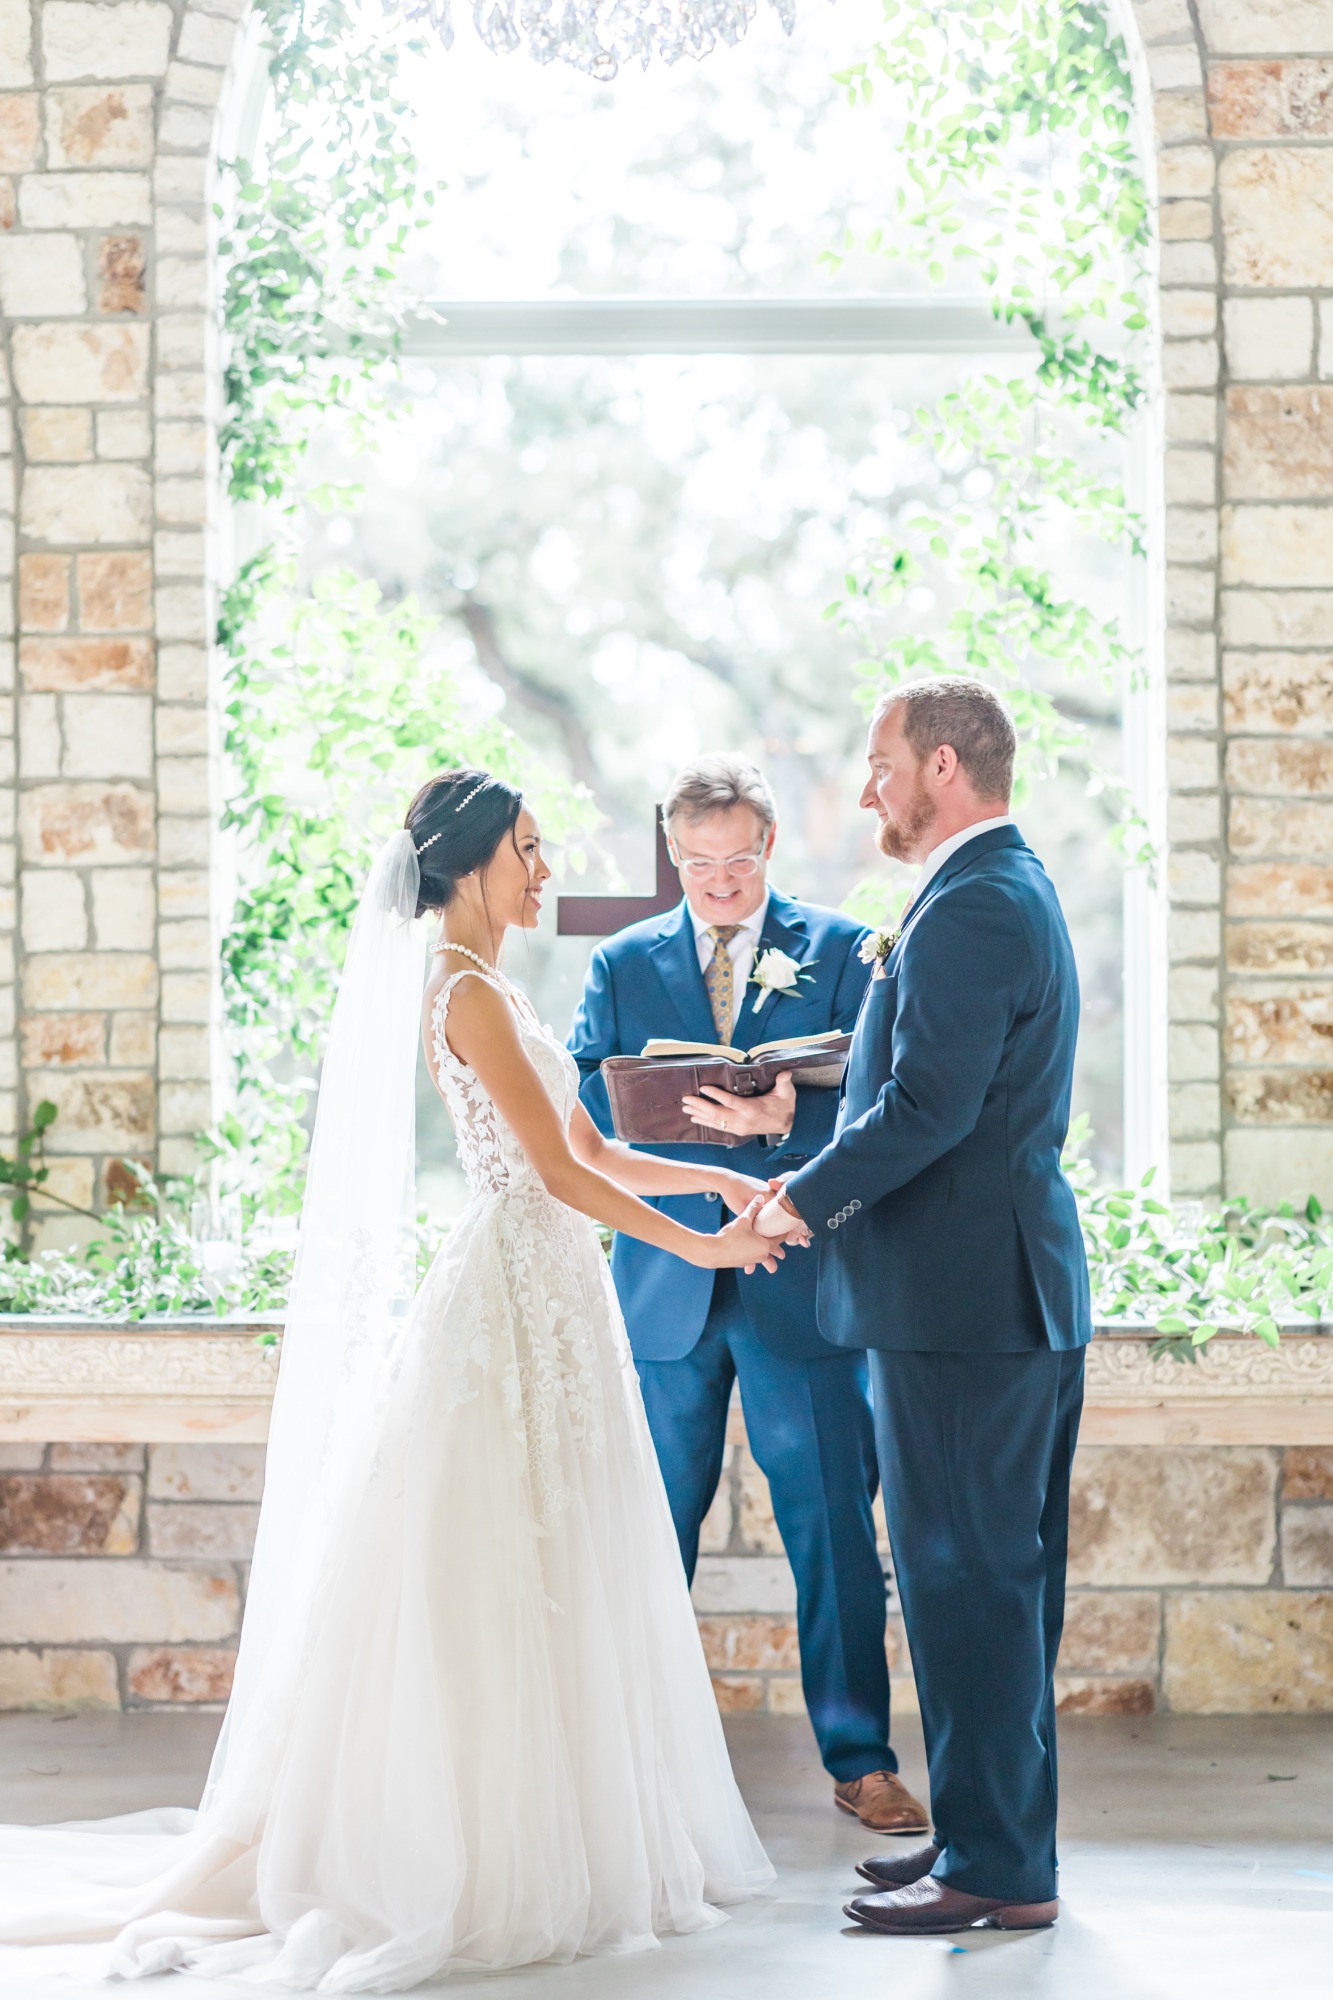 Texas Chapel wedding ceremony